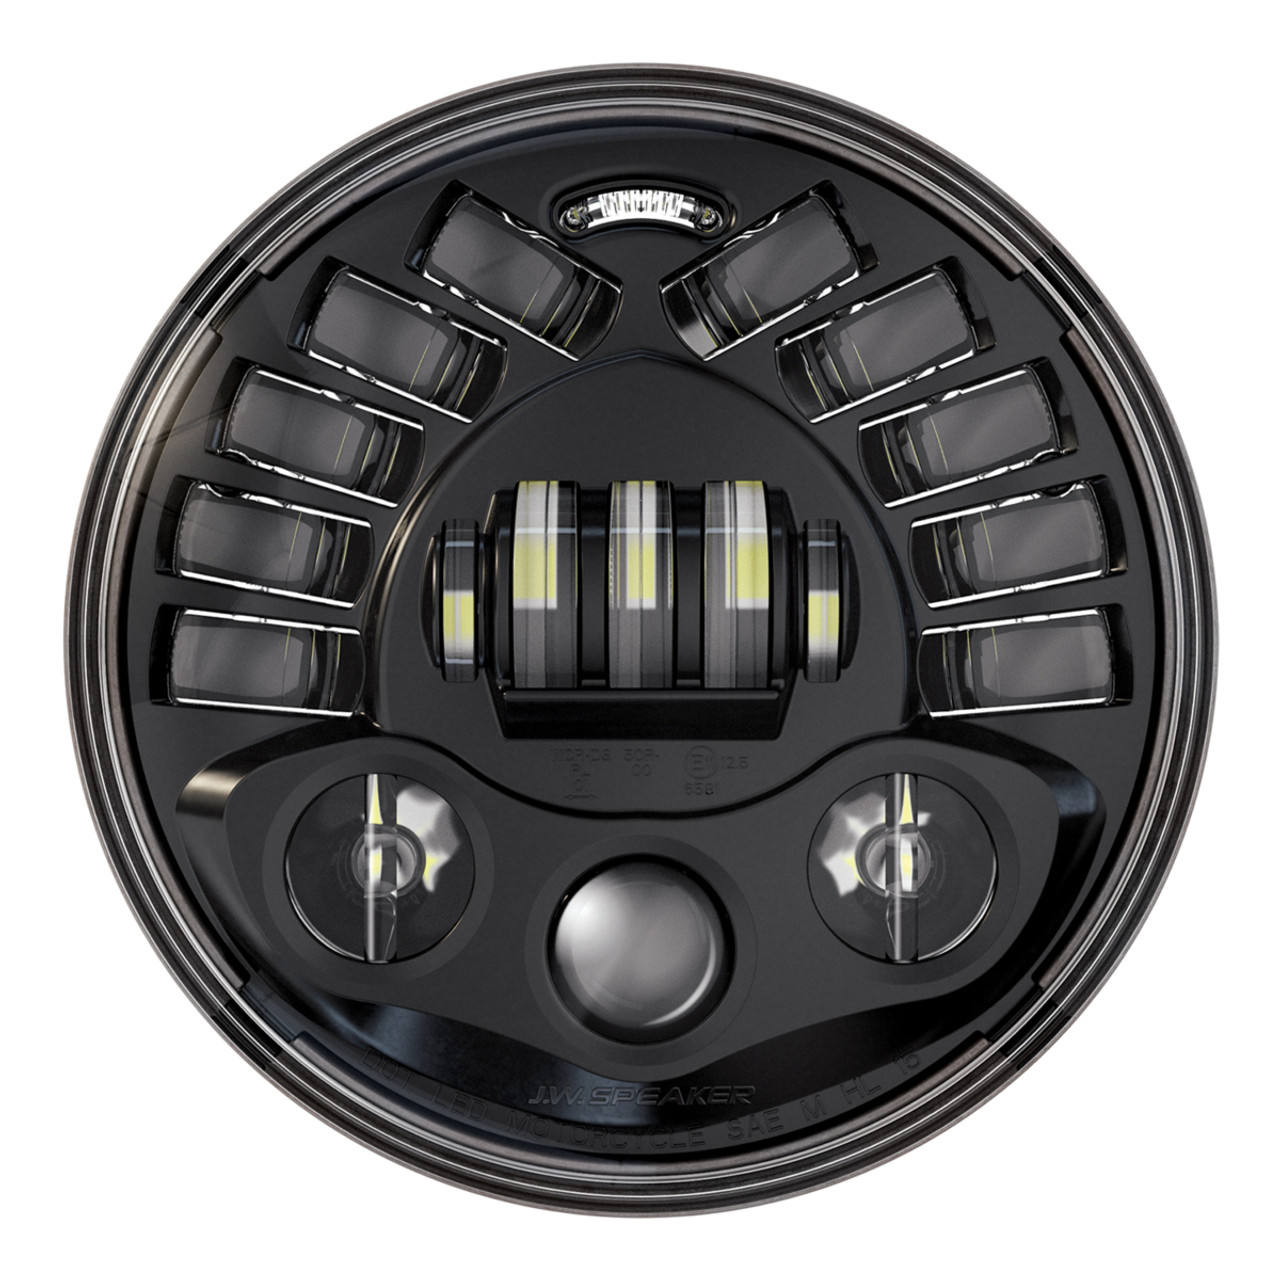 J.W. Speaker 8790 7" Round LED Motorcycle Headlight. Adaptive 2